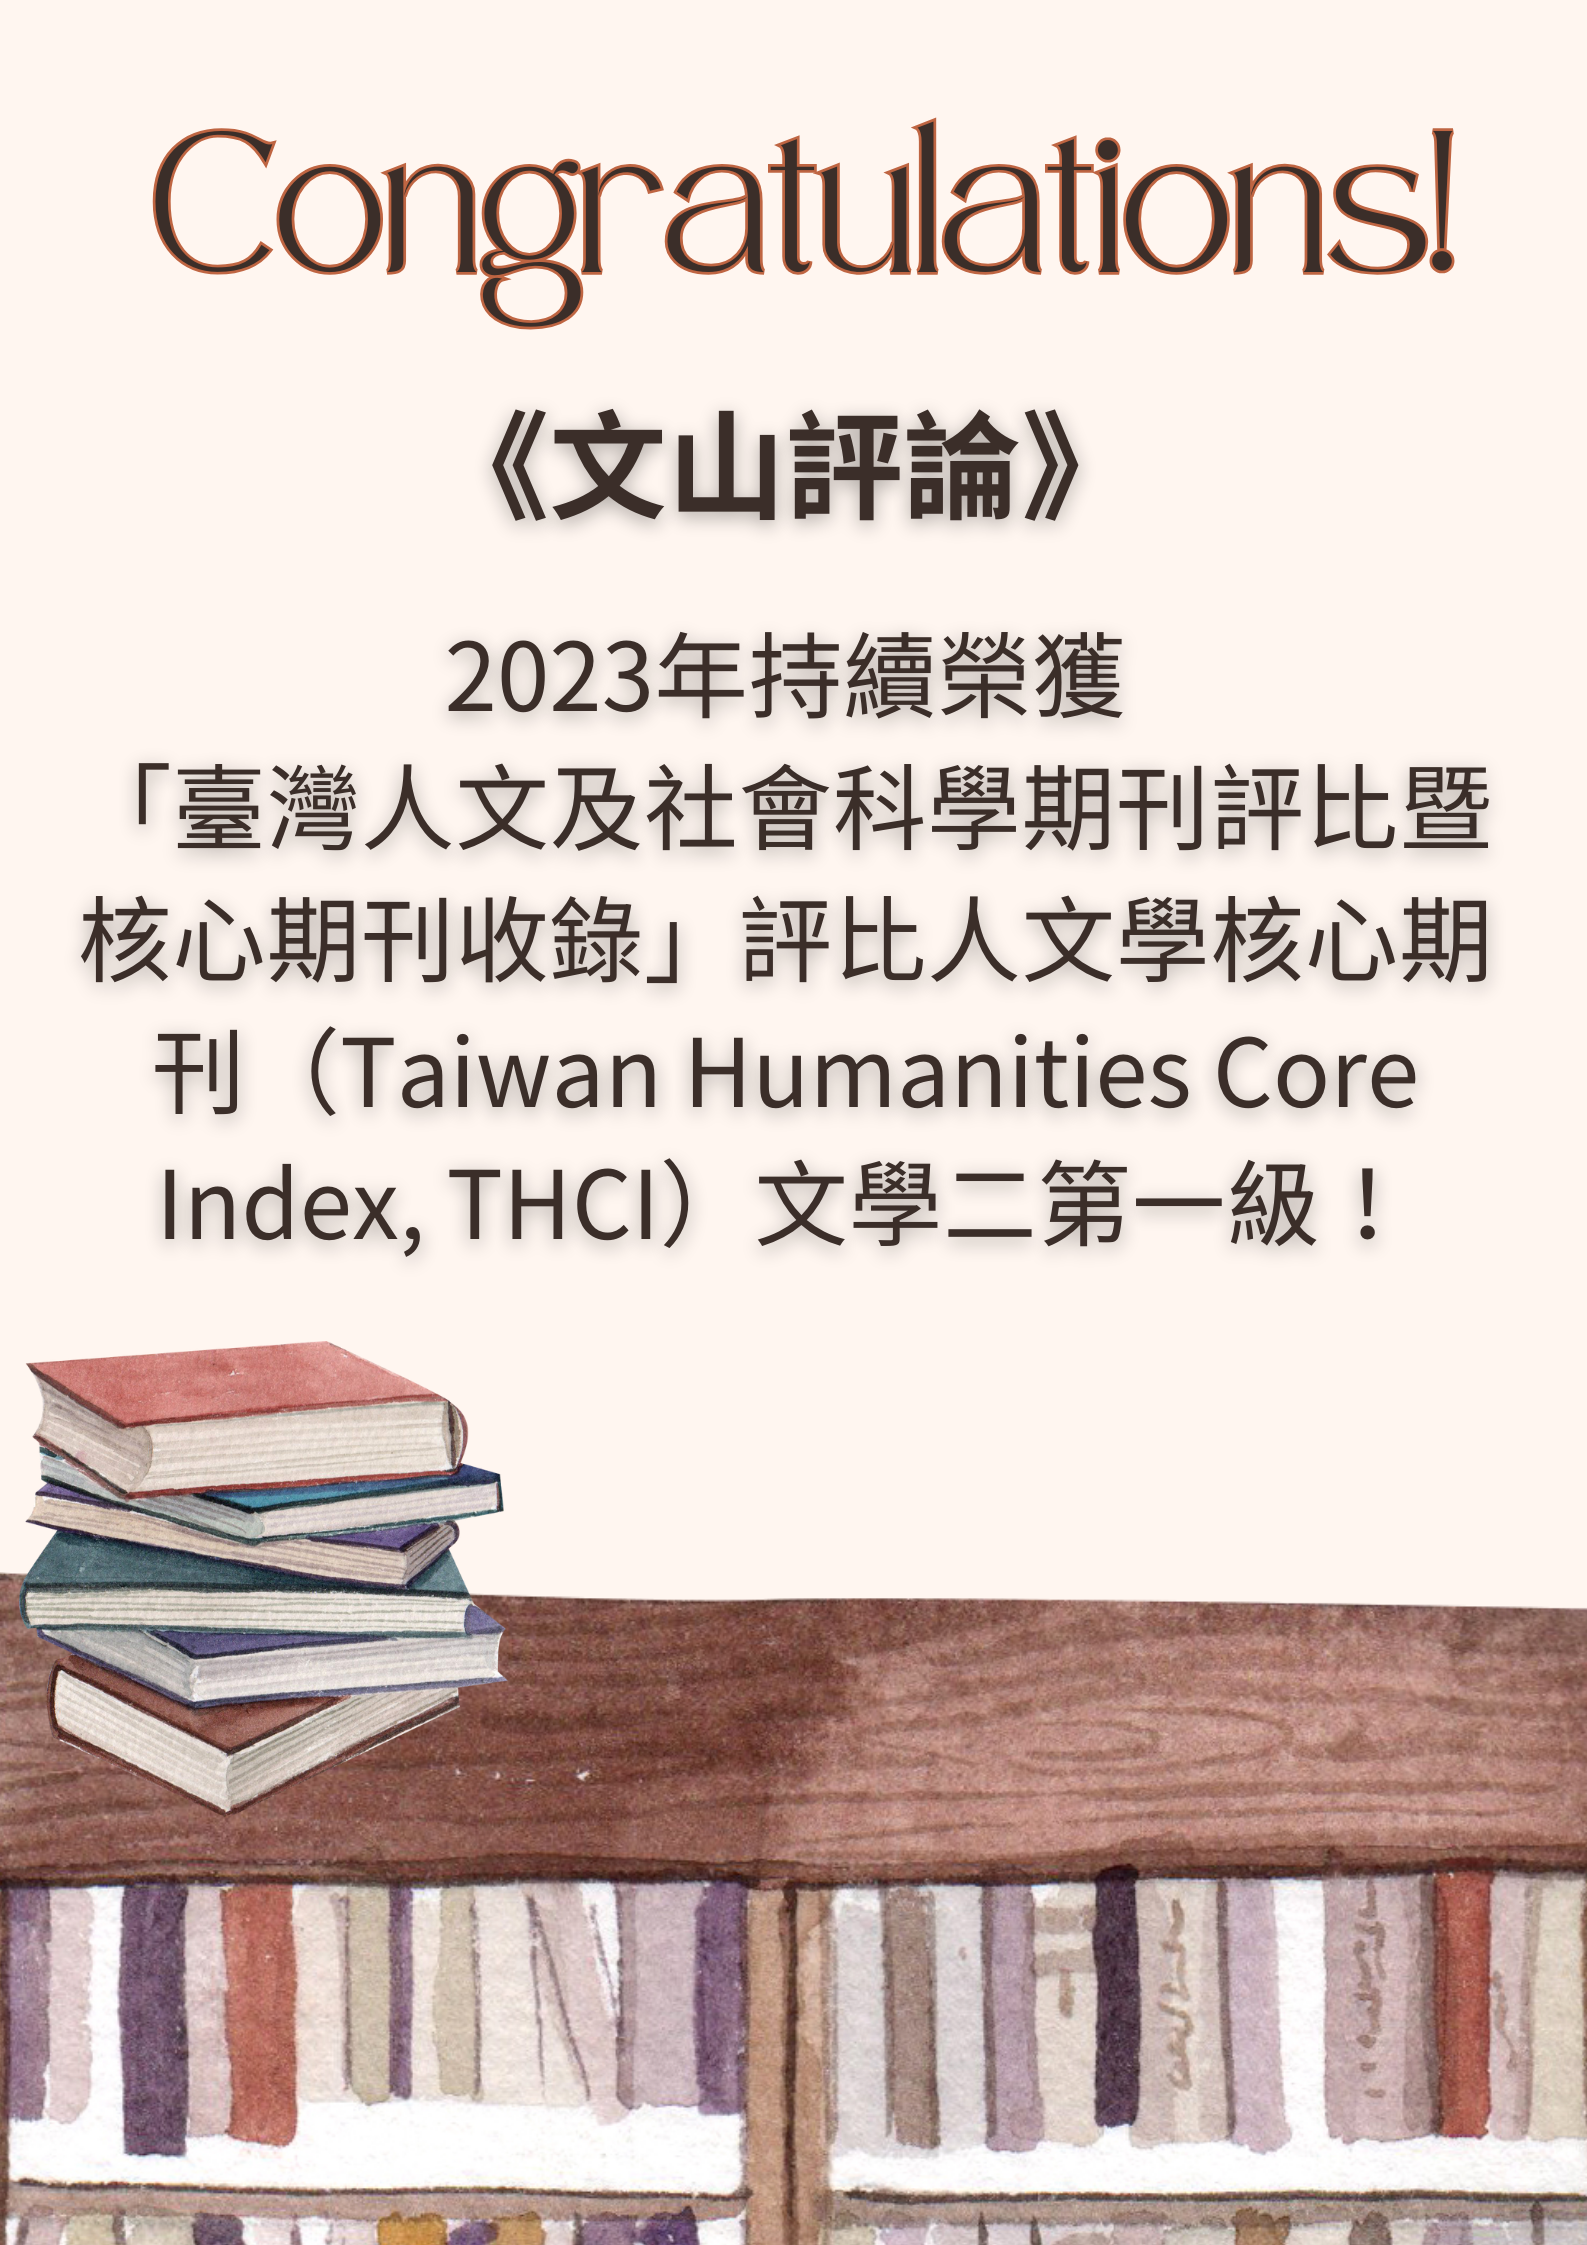 恭喜！本系期刊《文山評論》2023年持續榮獲 「臺灣人文及社會科學期刊評比暨核心期刊收錄」評比為人文學核心期刊（Taiwan Humanities Core Index, THCI）